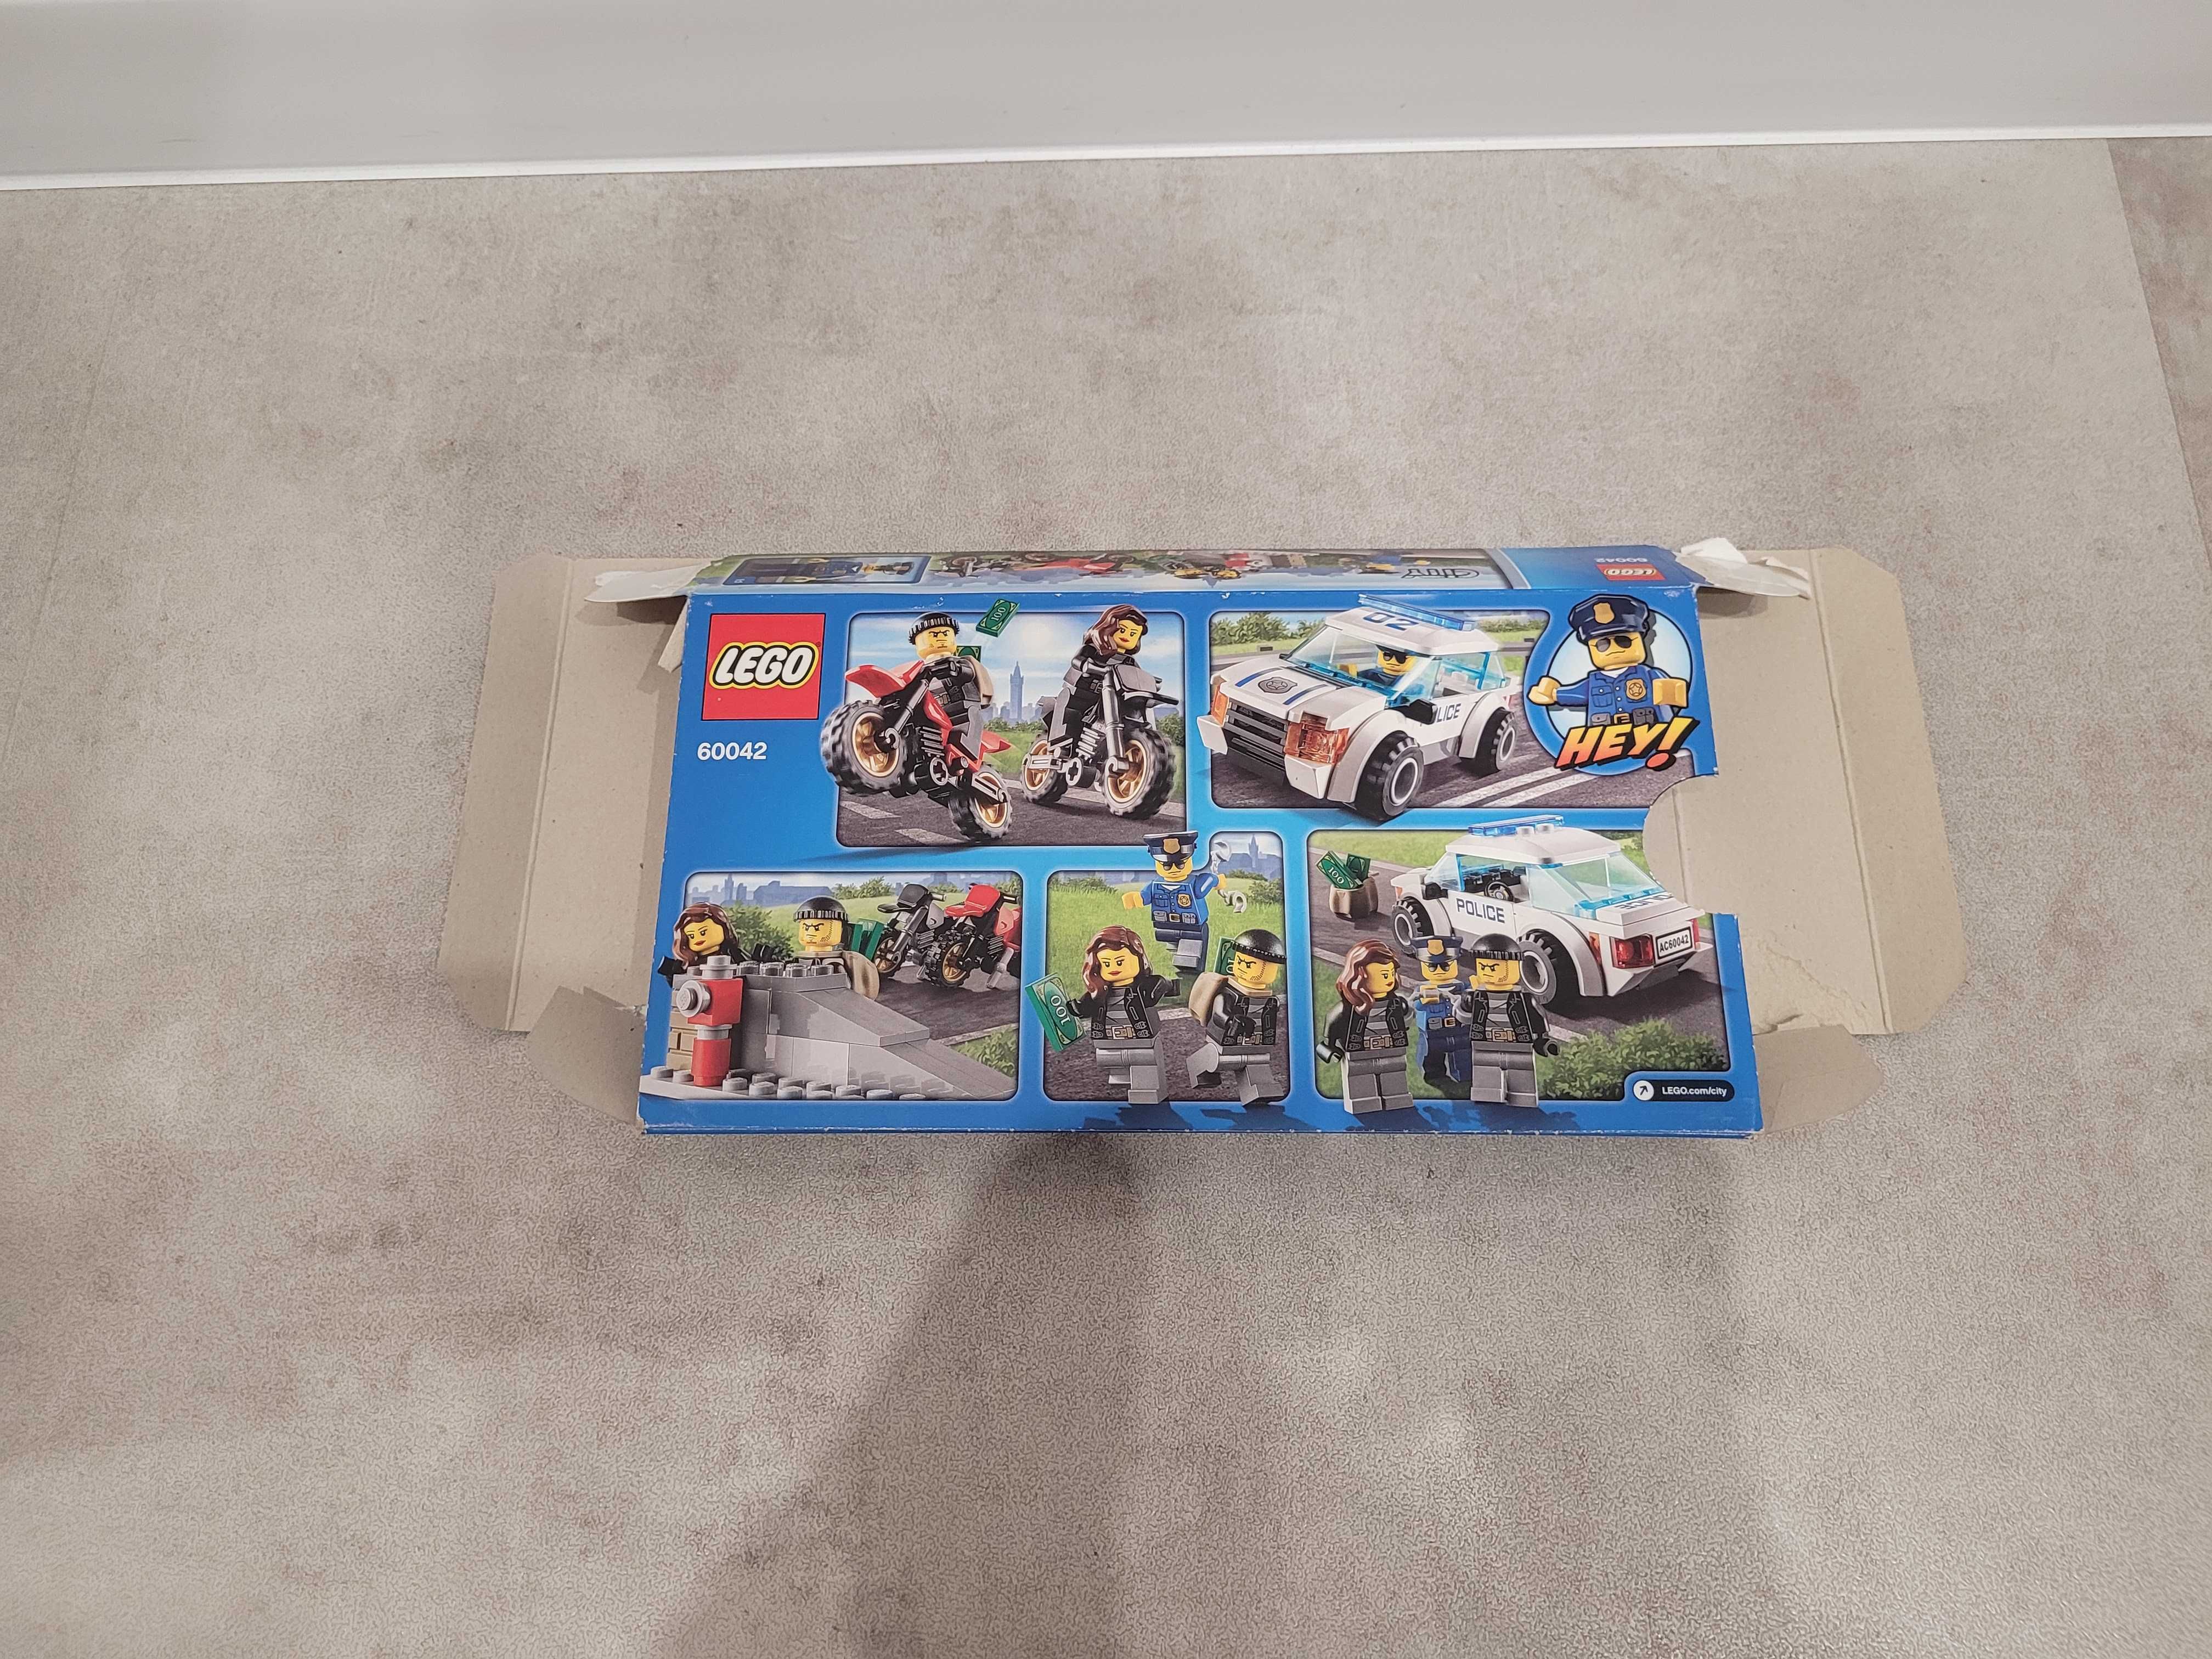 Pudełko do zestawu LEGO 60042 Box